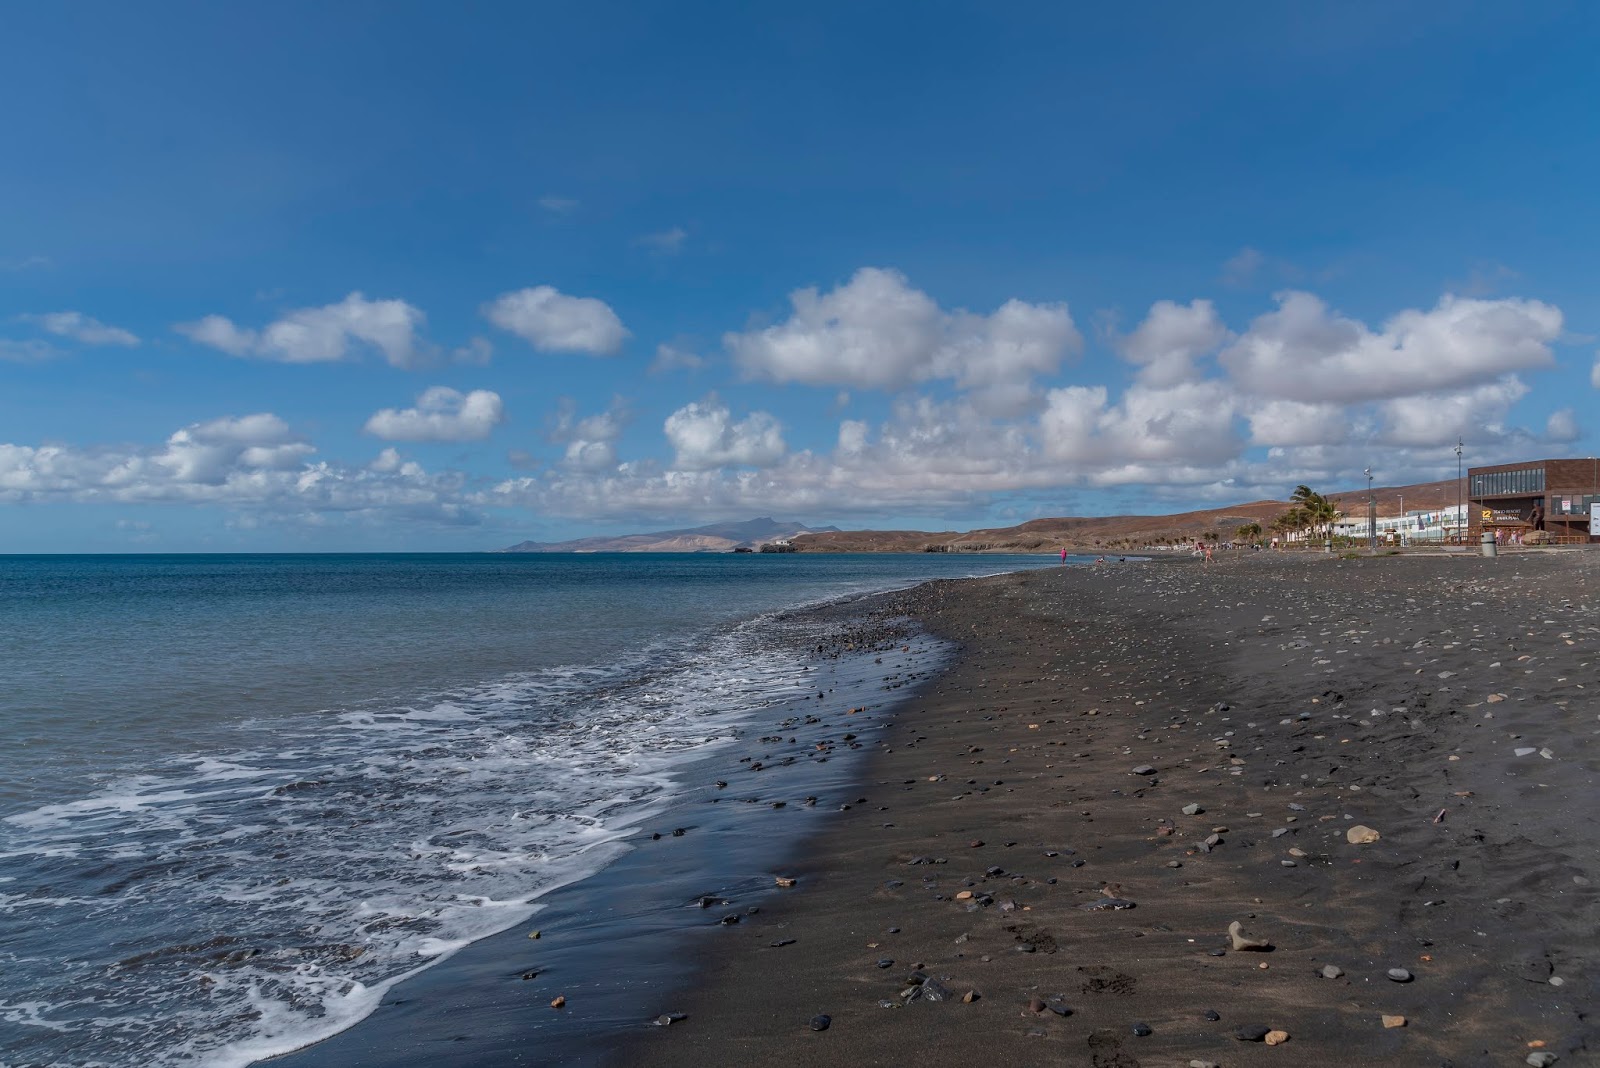 Playa negra Tarajalejo'in fotoğrafı geniş ile birlikte